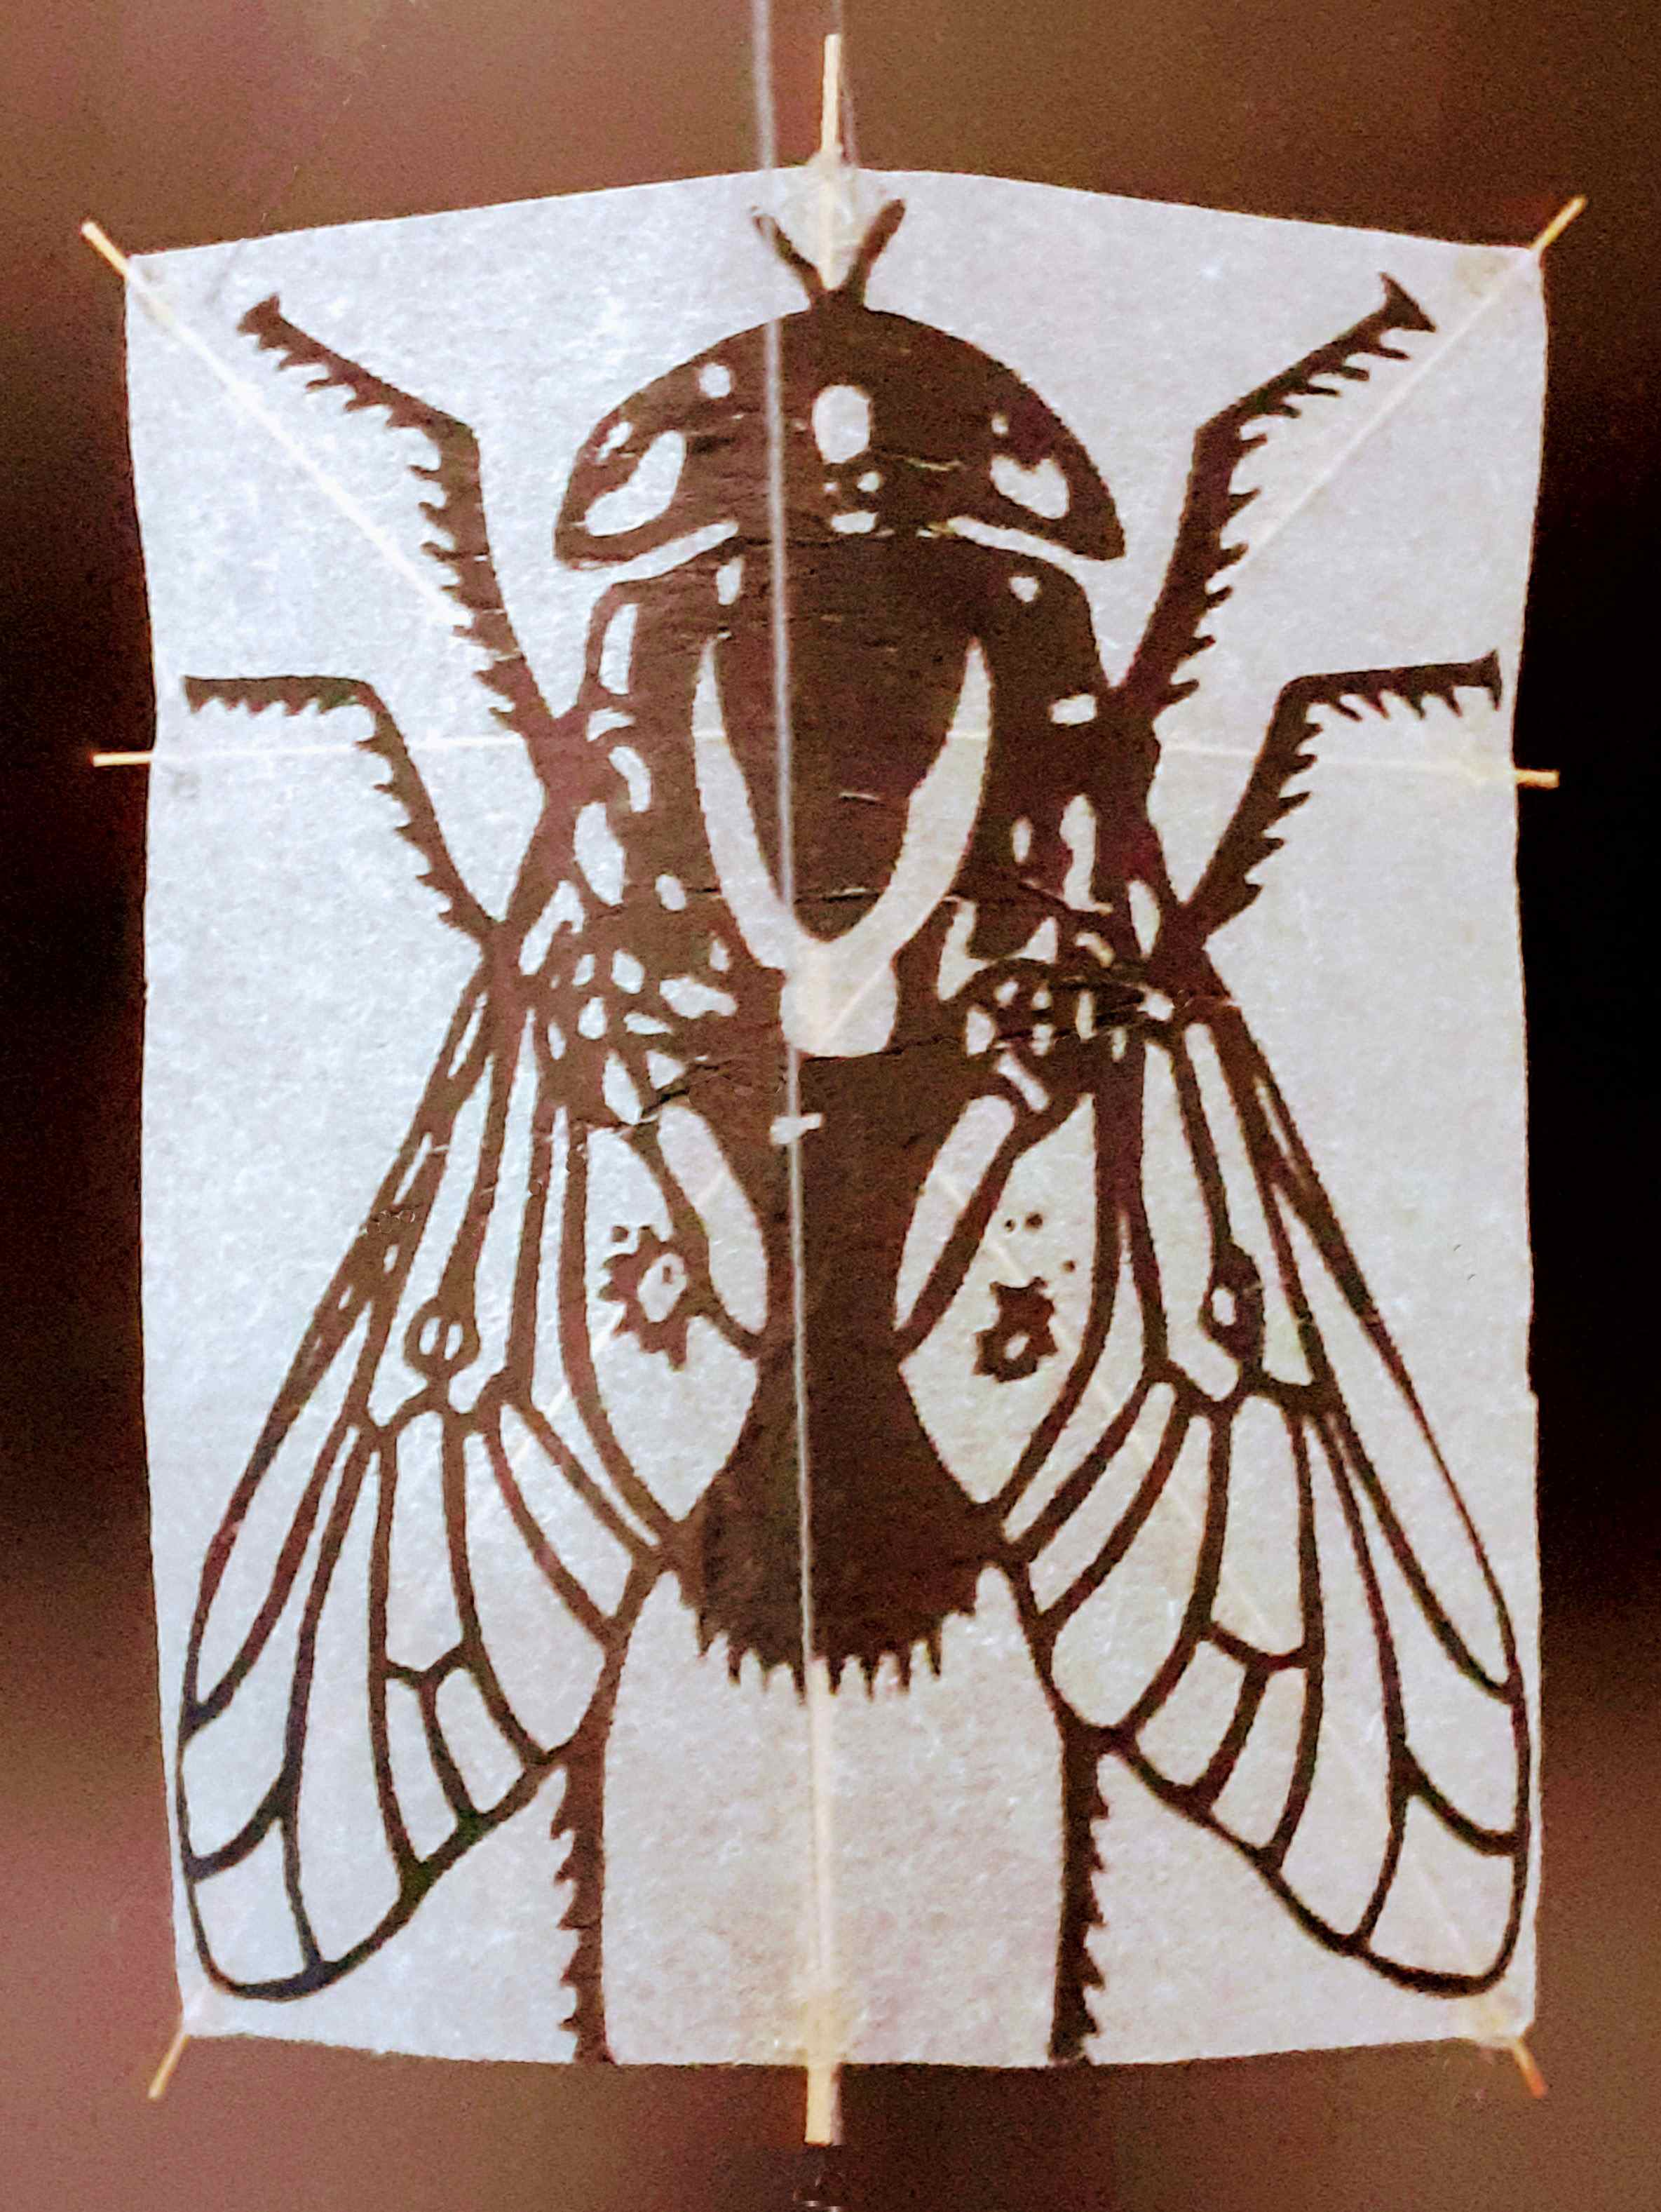 Fliege [(BxH) 55 x 70 mm]